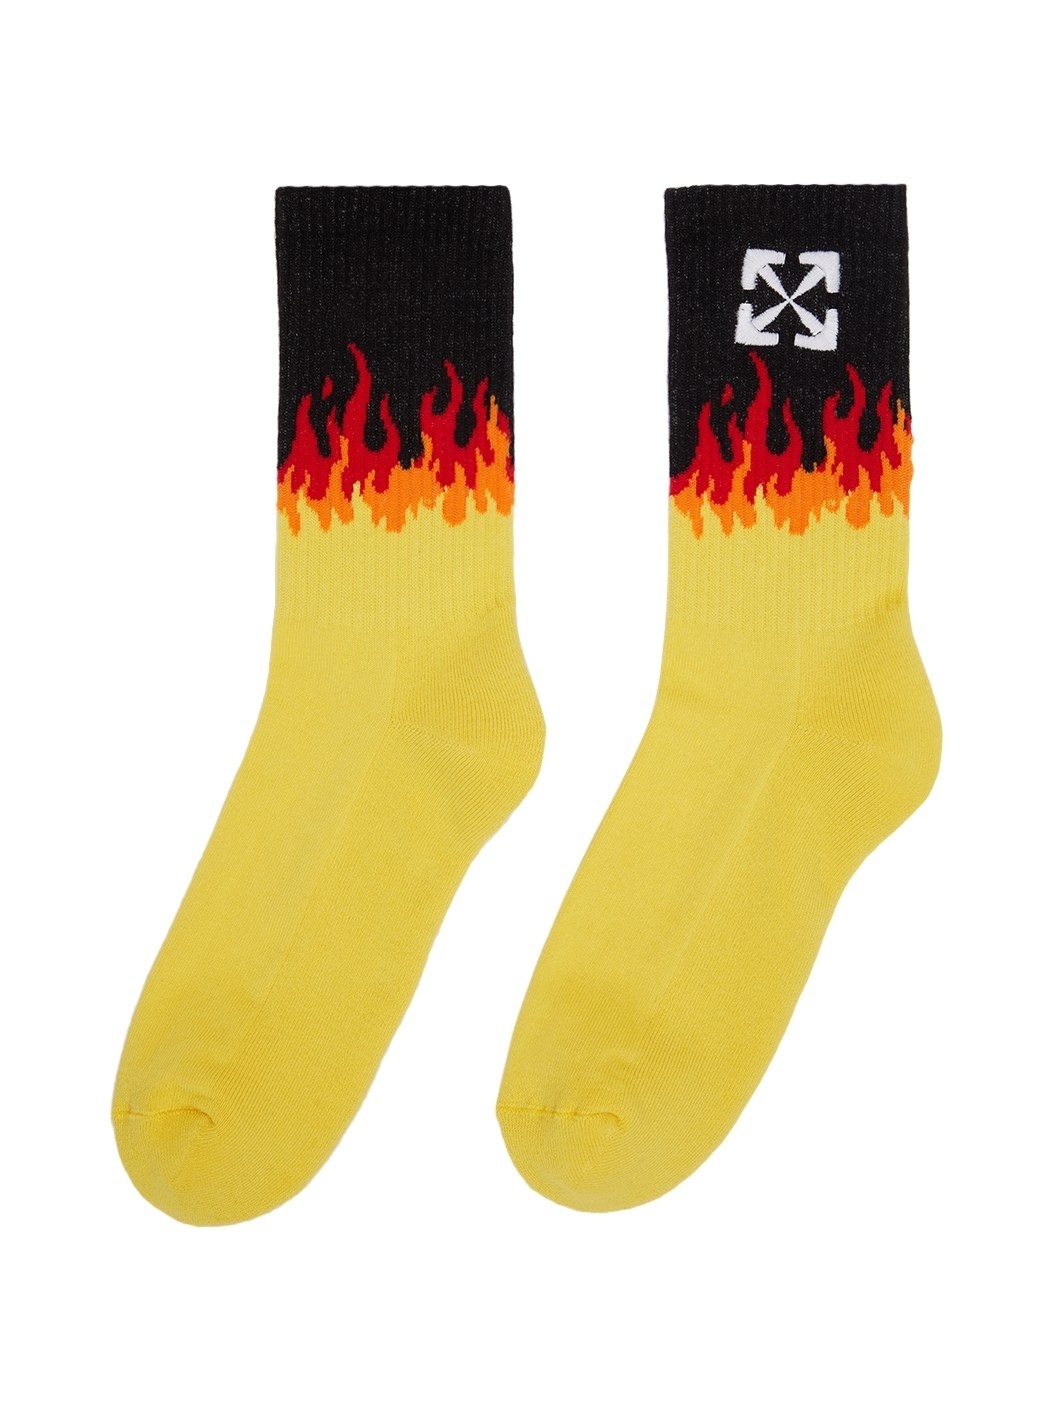 Yellow Arrow Socks - 2